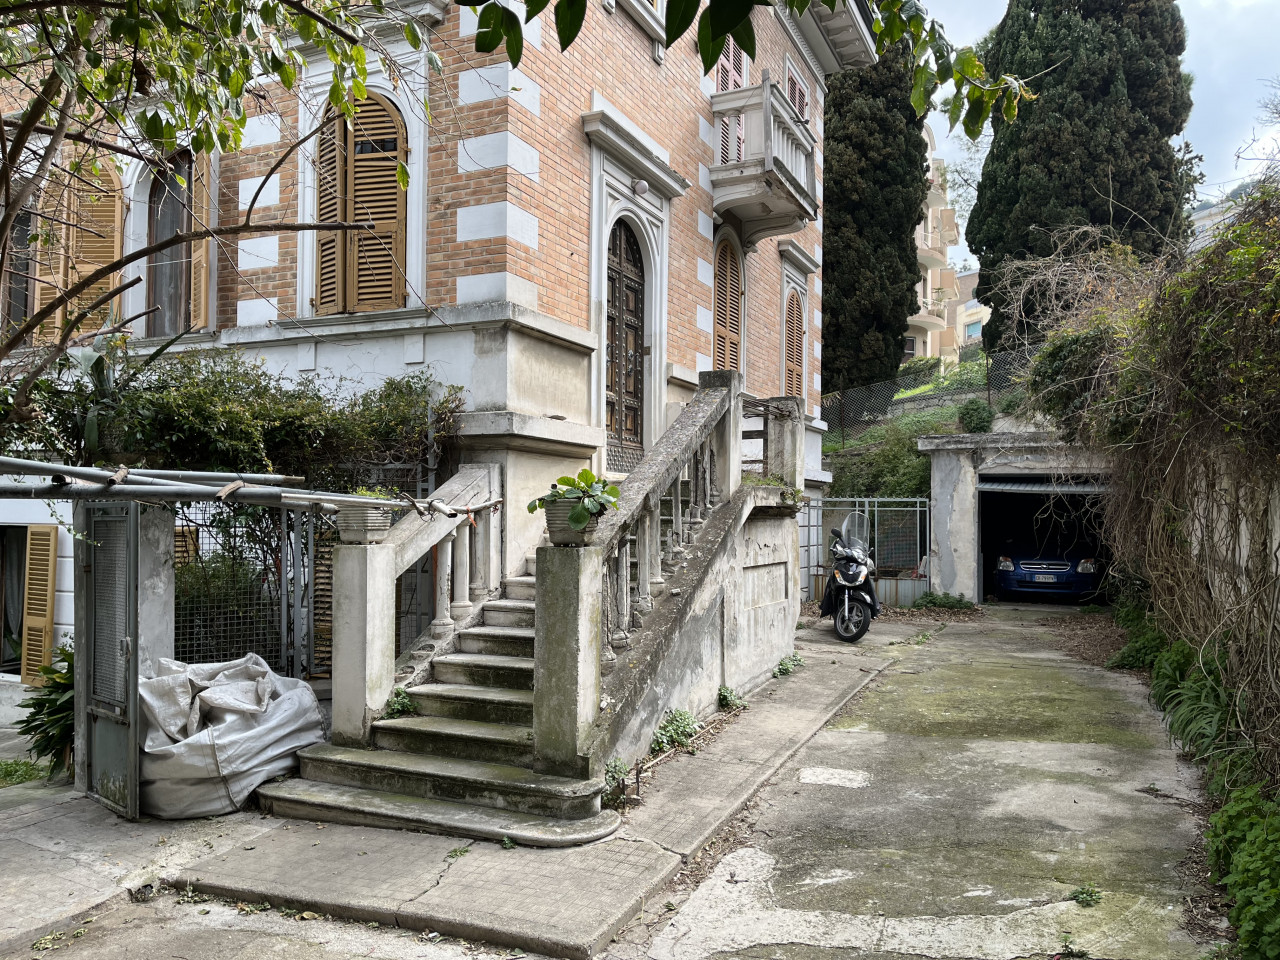 In villa con giardino esclusivo, Ancona centro.